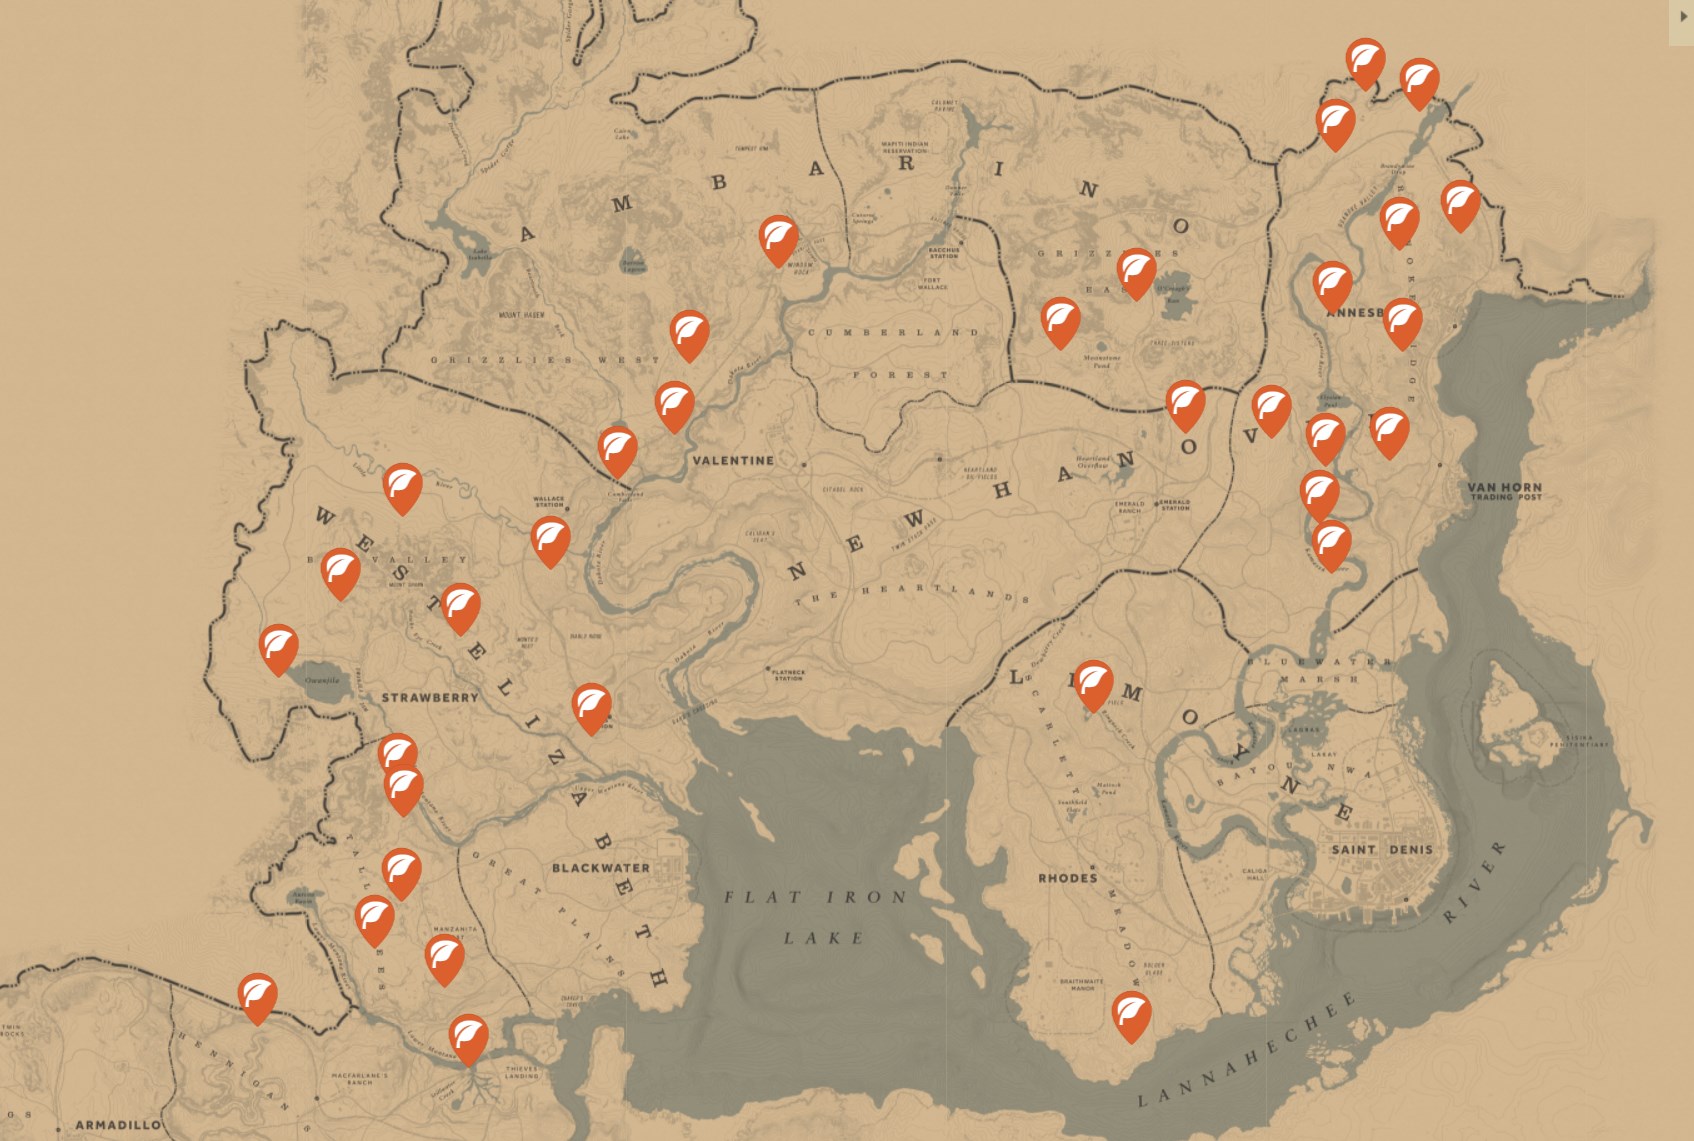 Este mapa te ayudará a completar al 100% Red Dead Redemption 2